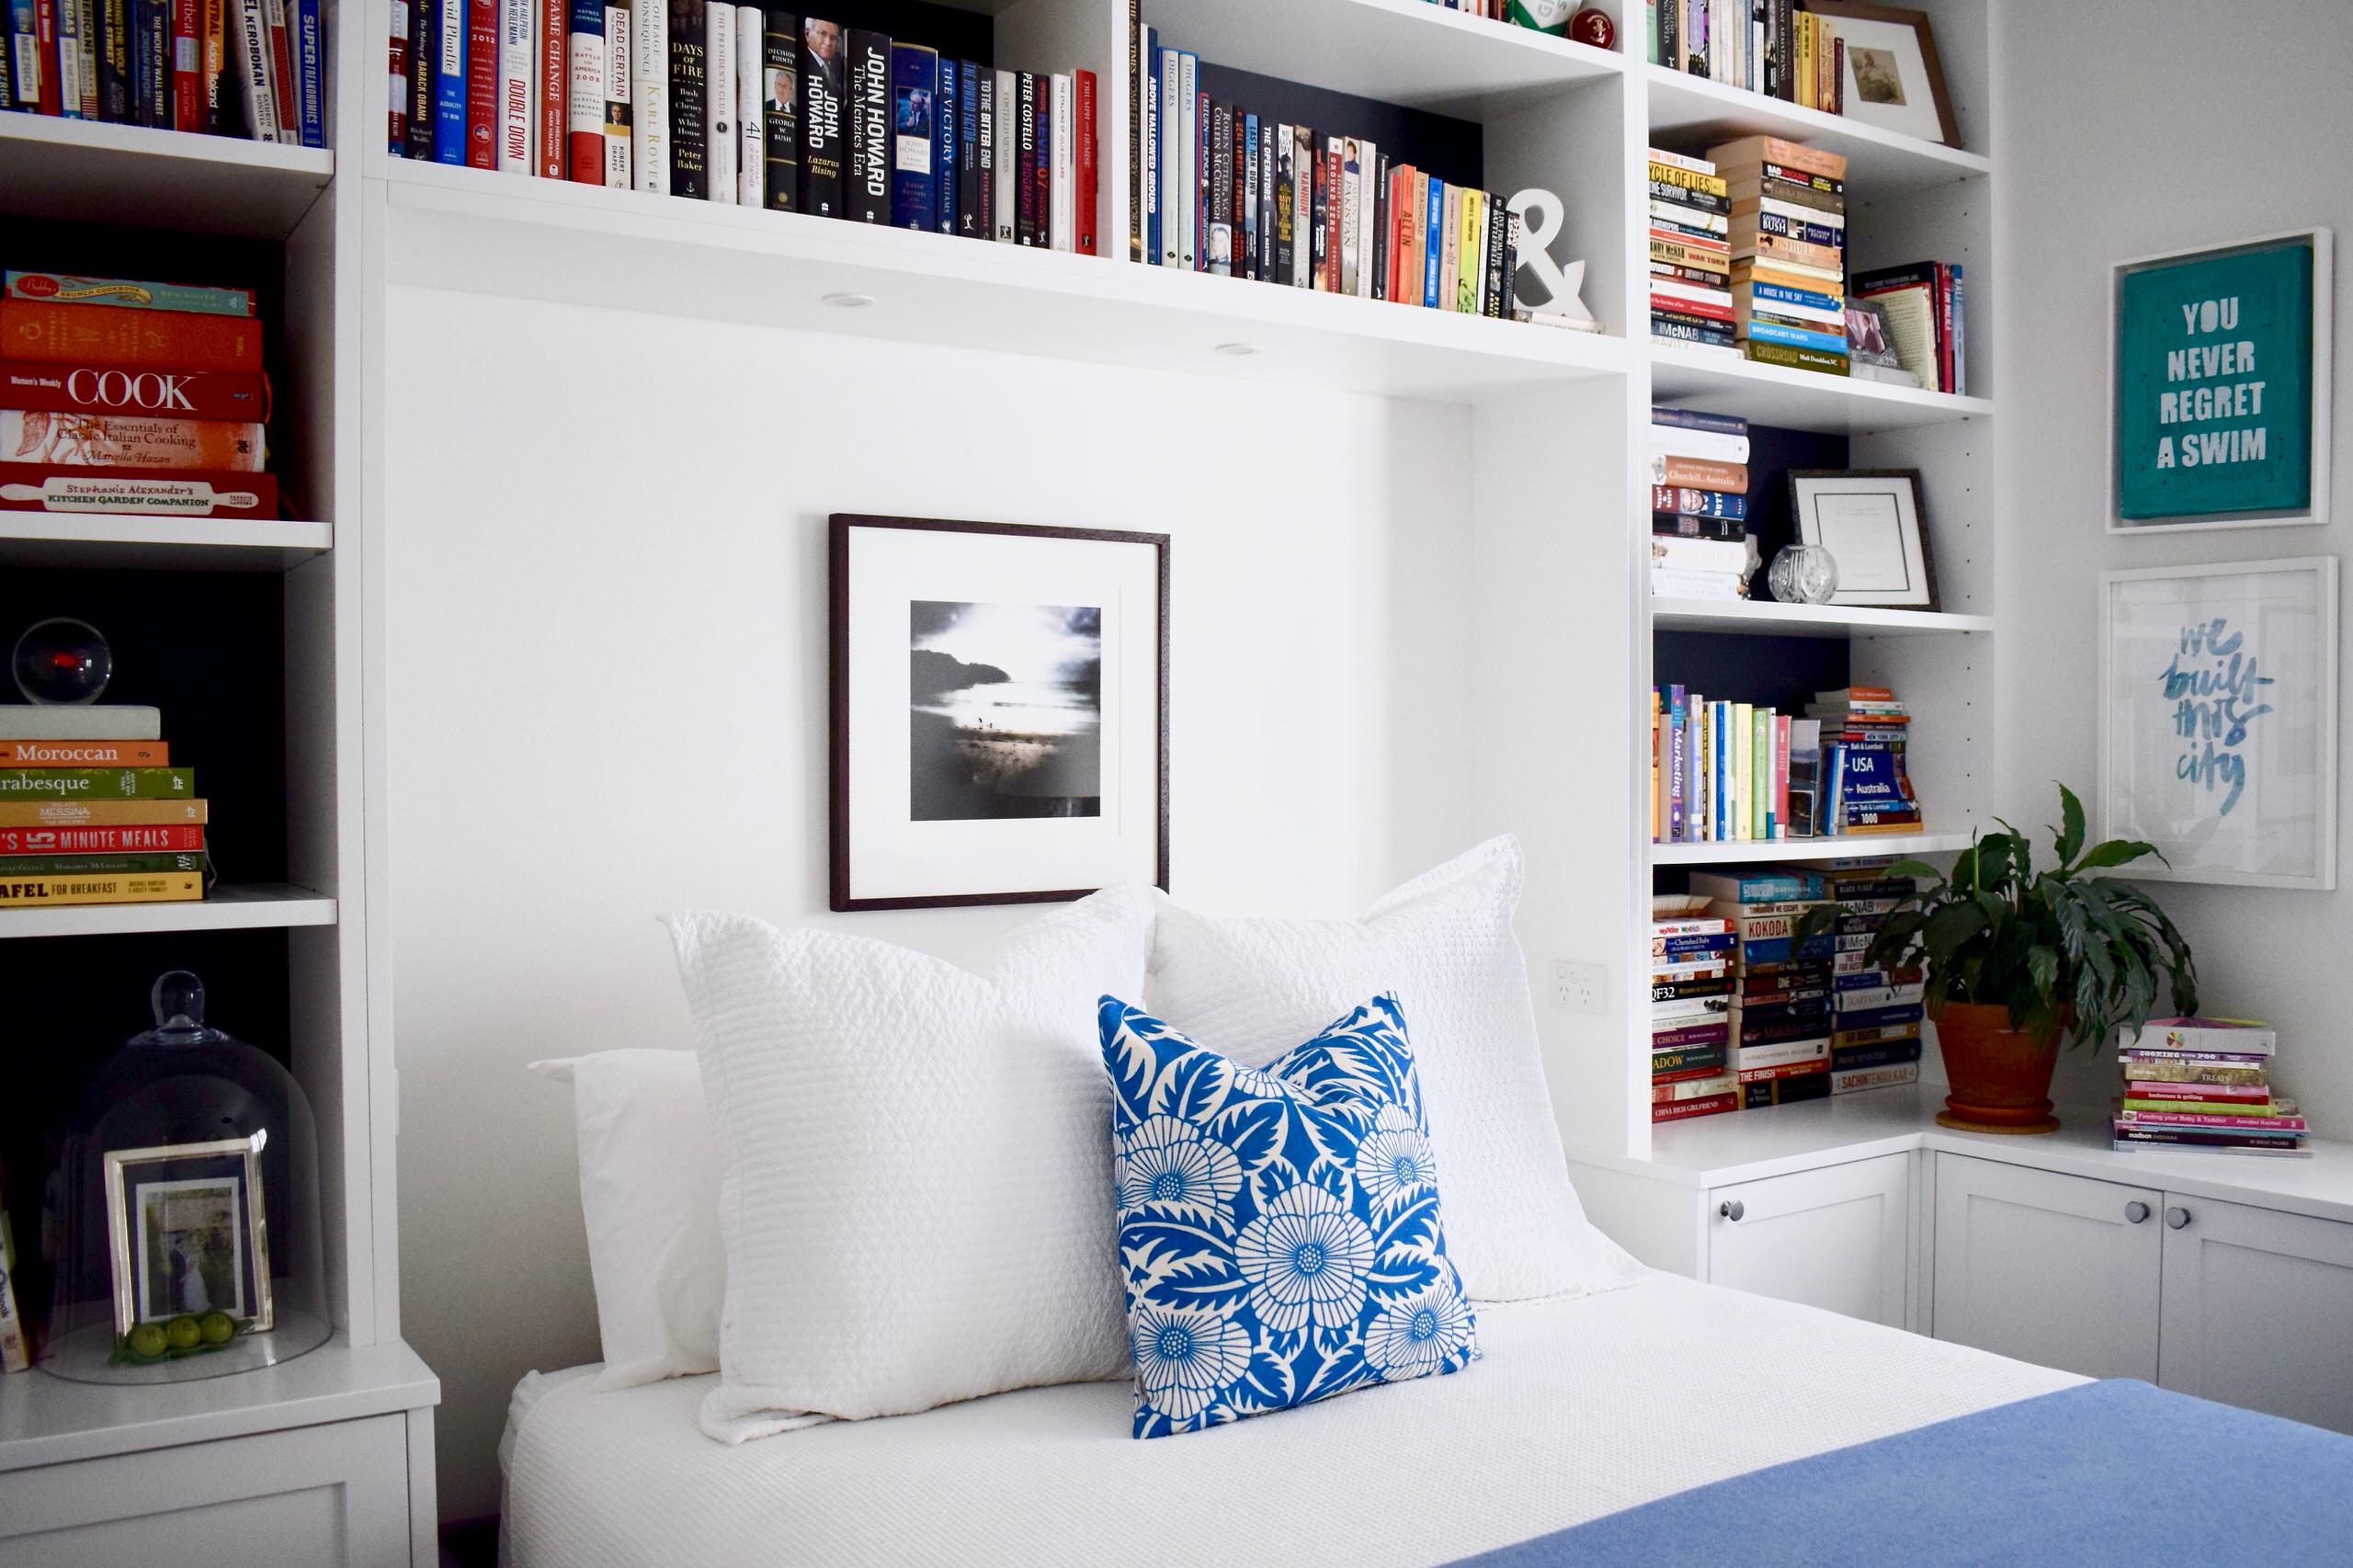 Nicht nur für lange Lesenächte: Schlafzimmer mit Bücherregalen